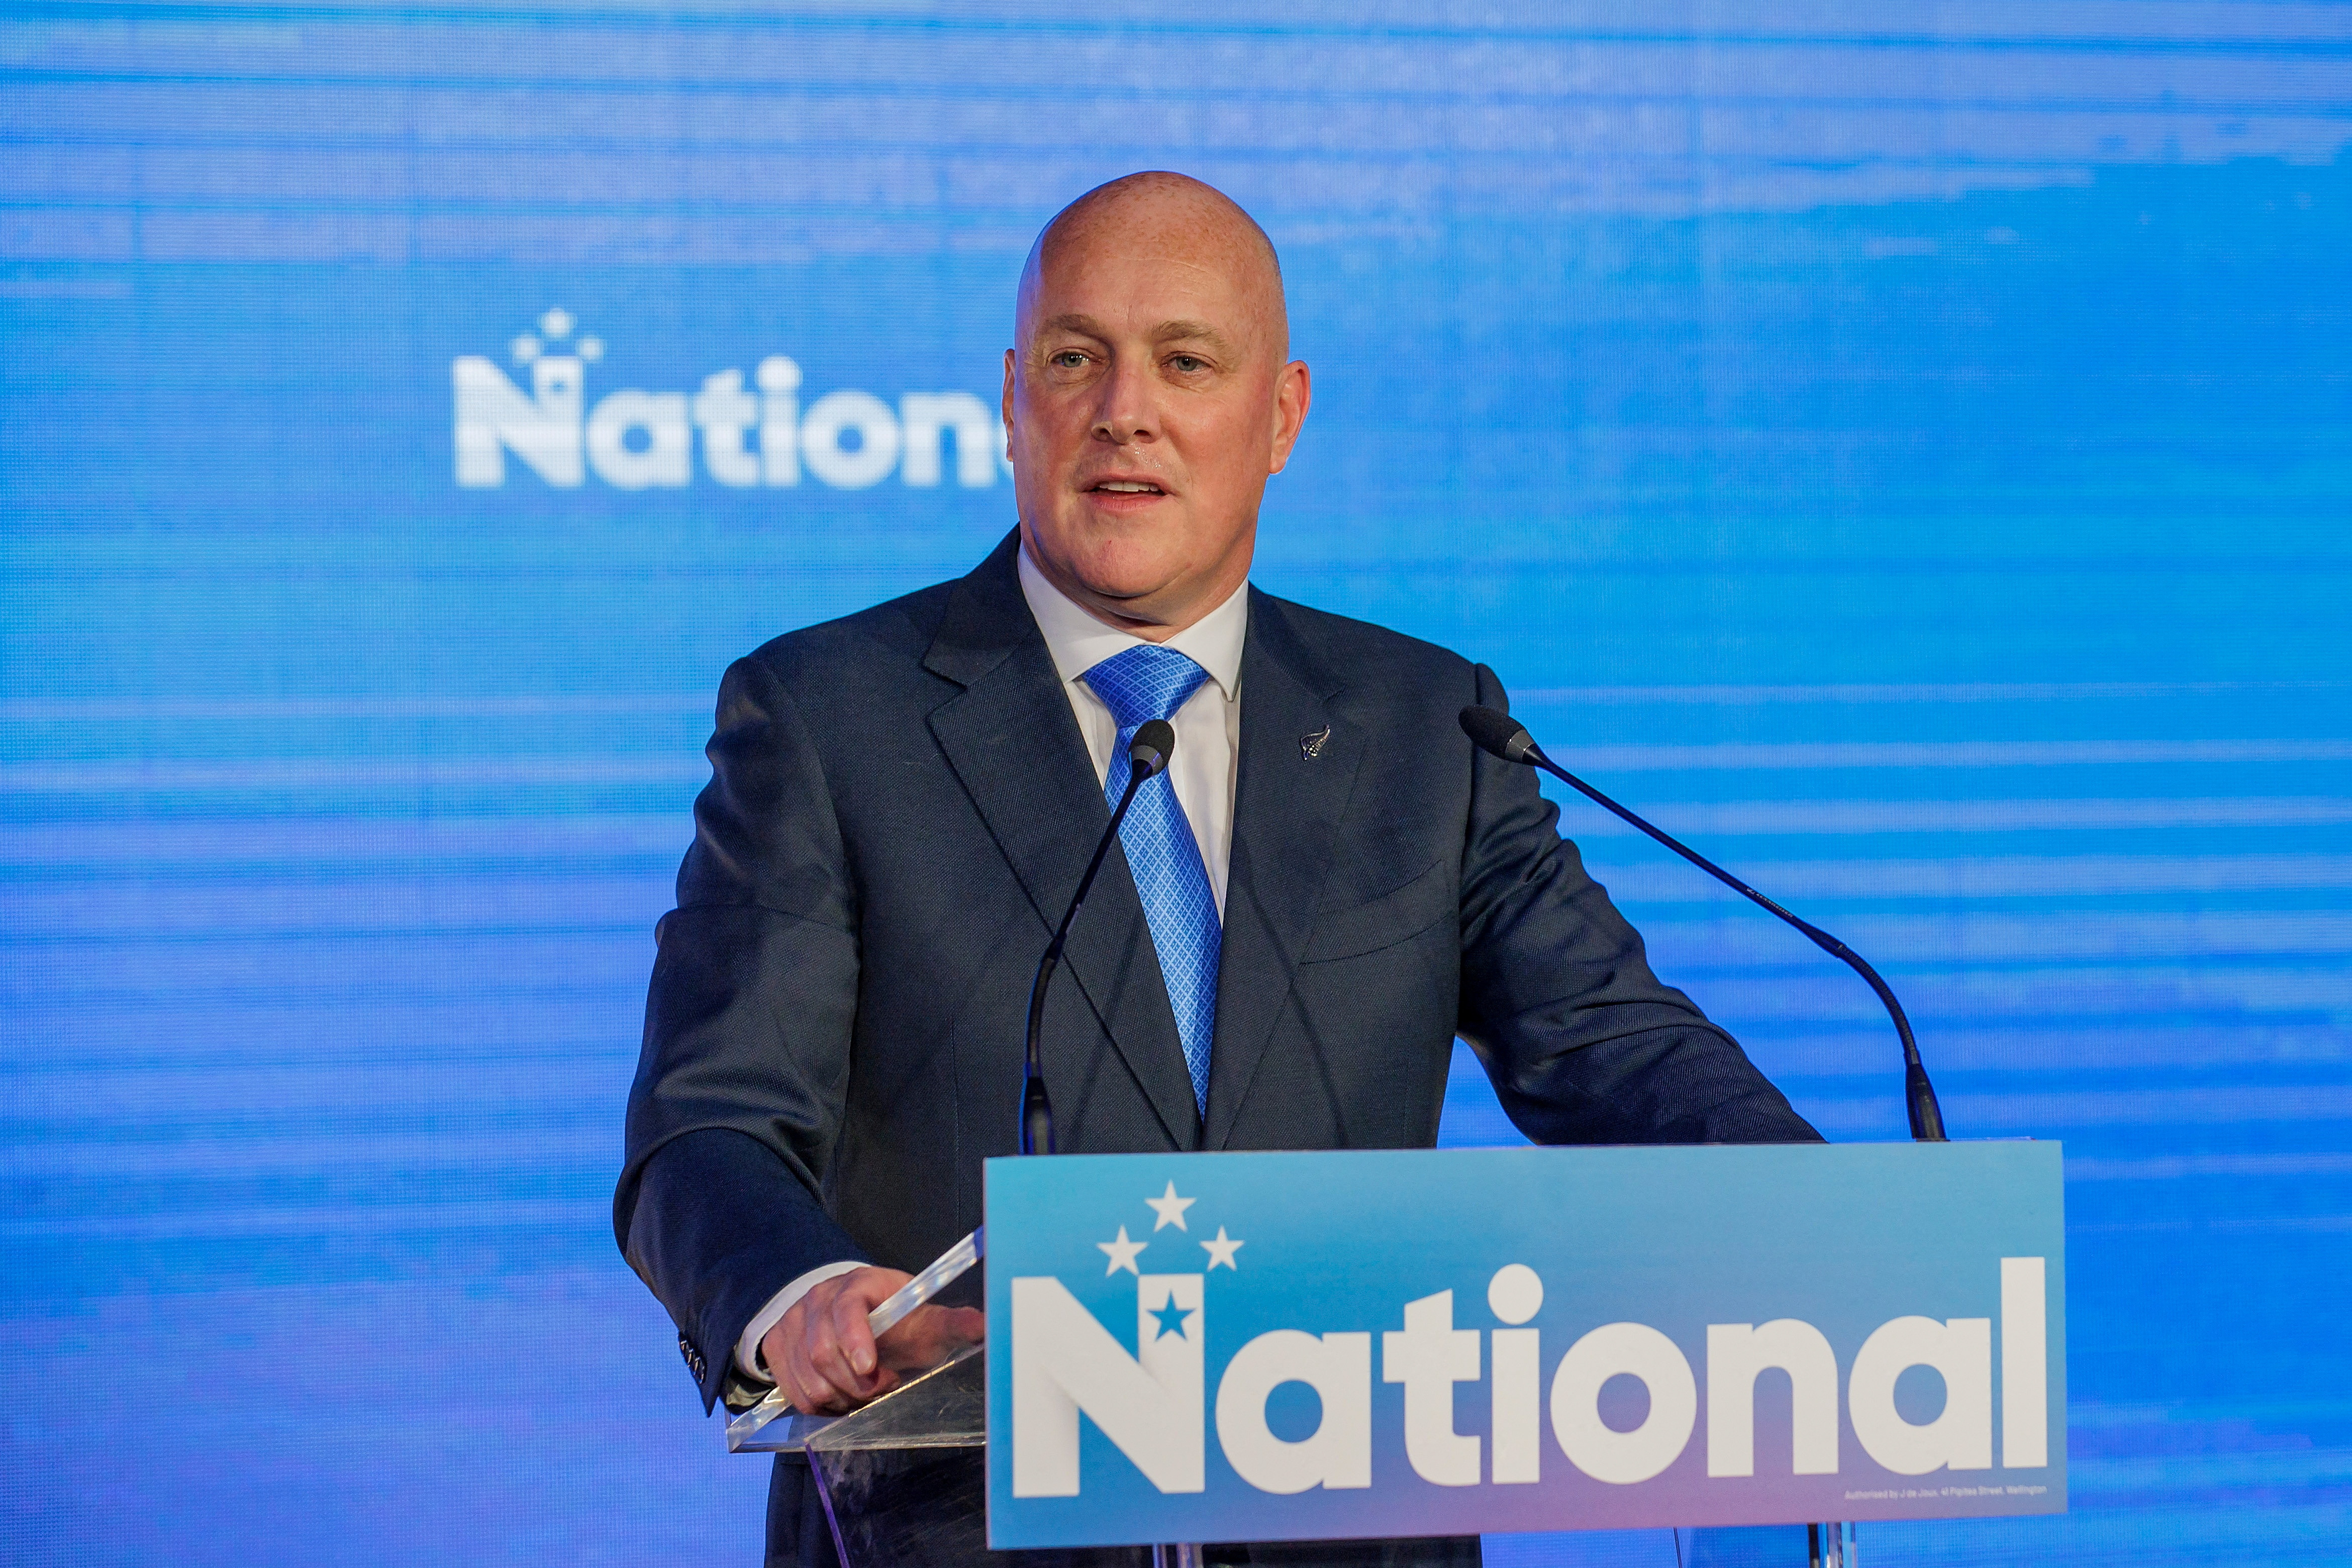 Christopher luxon, un ex-patron de compagnie aérienne devient Premier ministre de la Nouvelle-Zélande